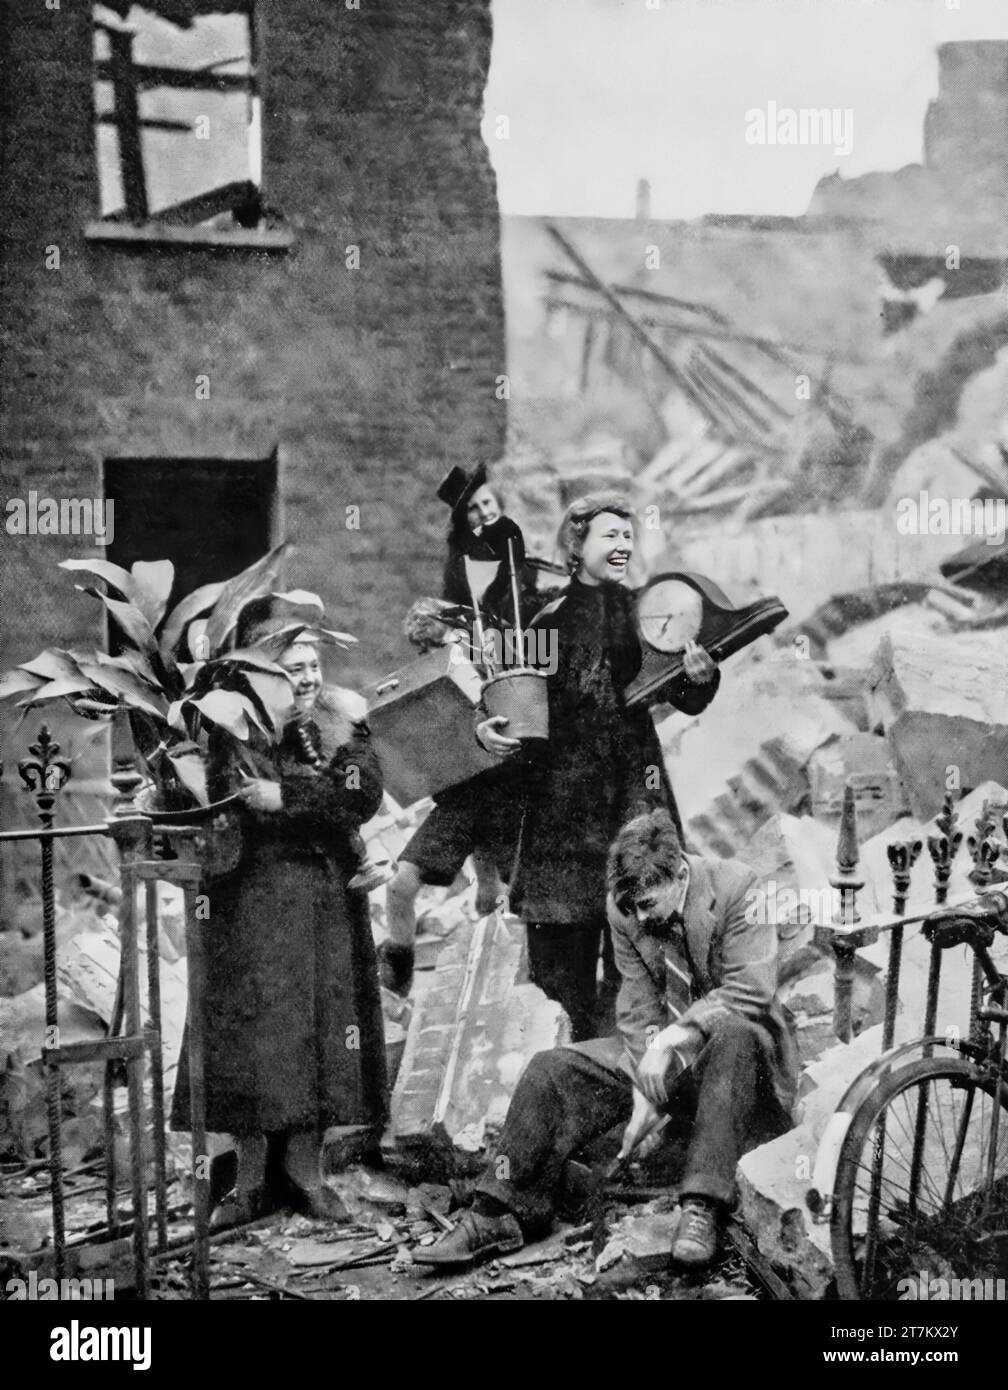 Trotz schlafloser Nächte während des Zweiten Weltkriegs in Luftschutzbunker schaffen es Londoner immer noch zu lächeln, nachdem sie eine Uhr und eine Aspidestra aus ihrem kürzlich bombardierten Haus, London, England, im Oktober 1940 gerettet haben. Stockfoto